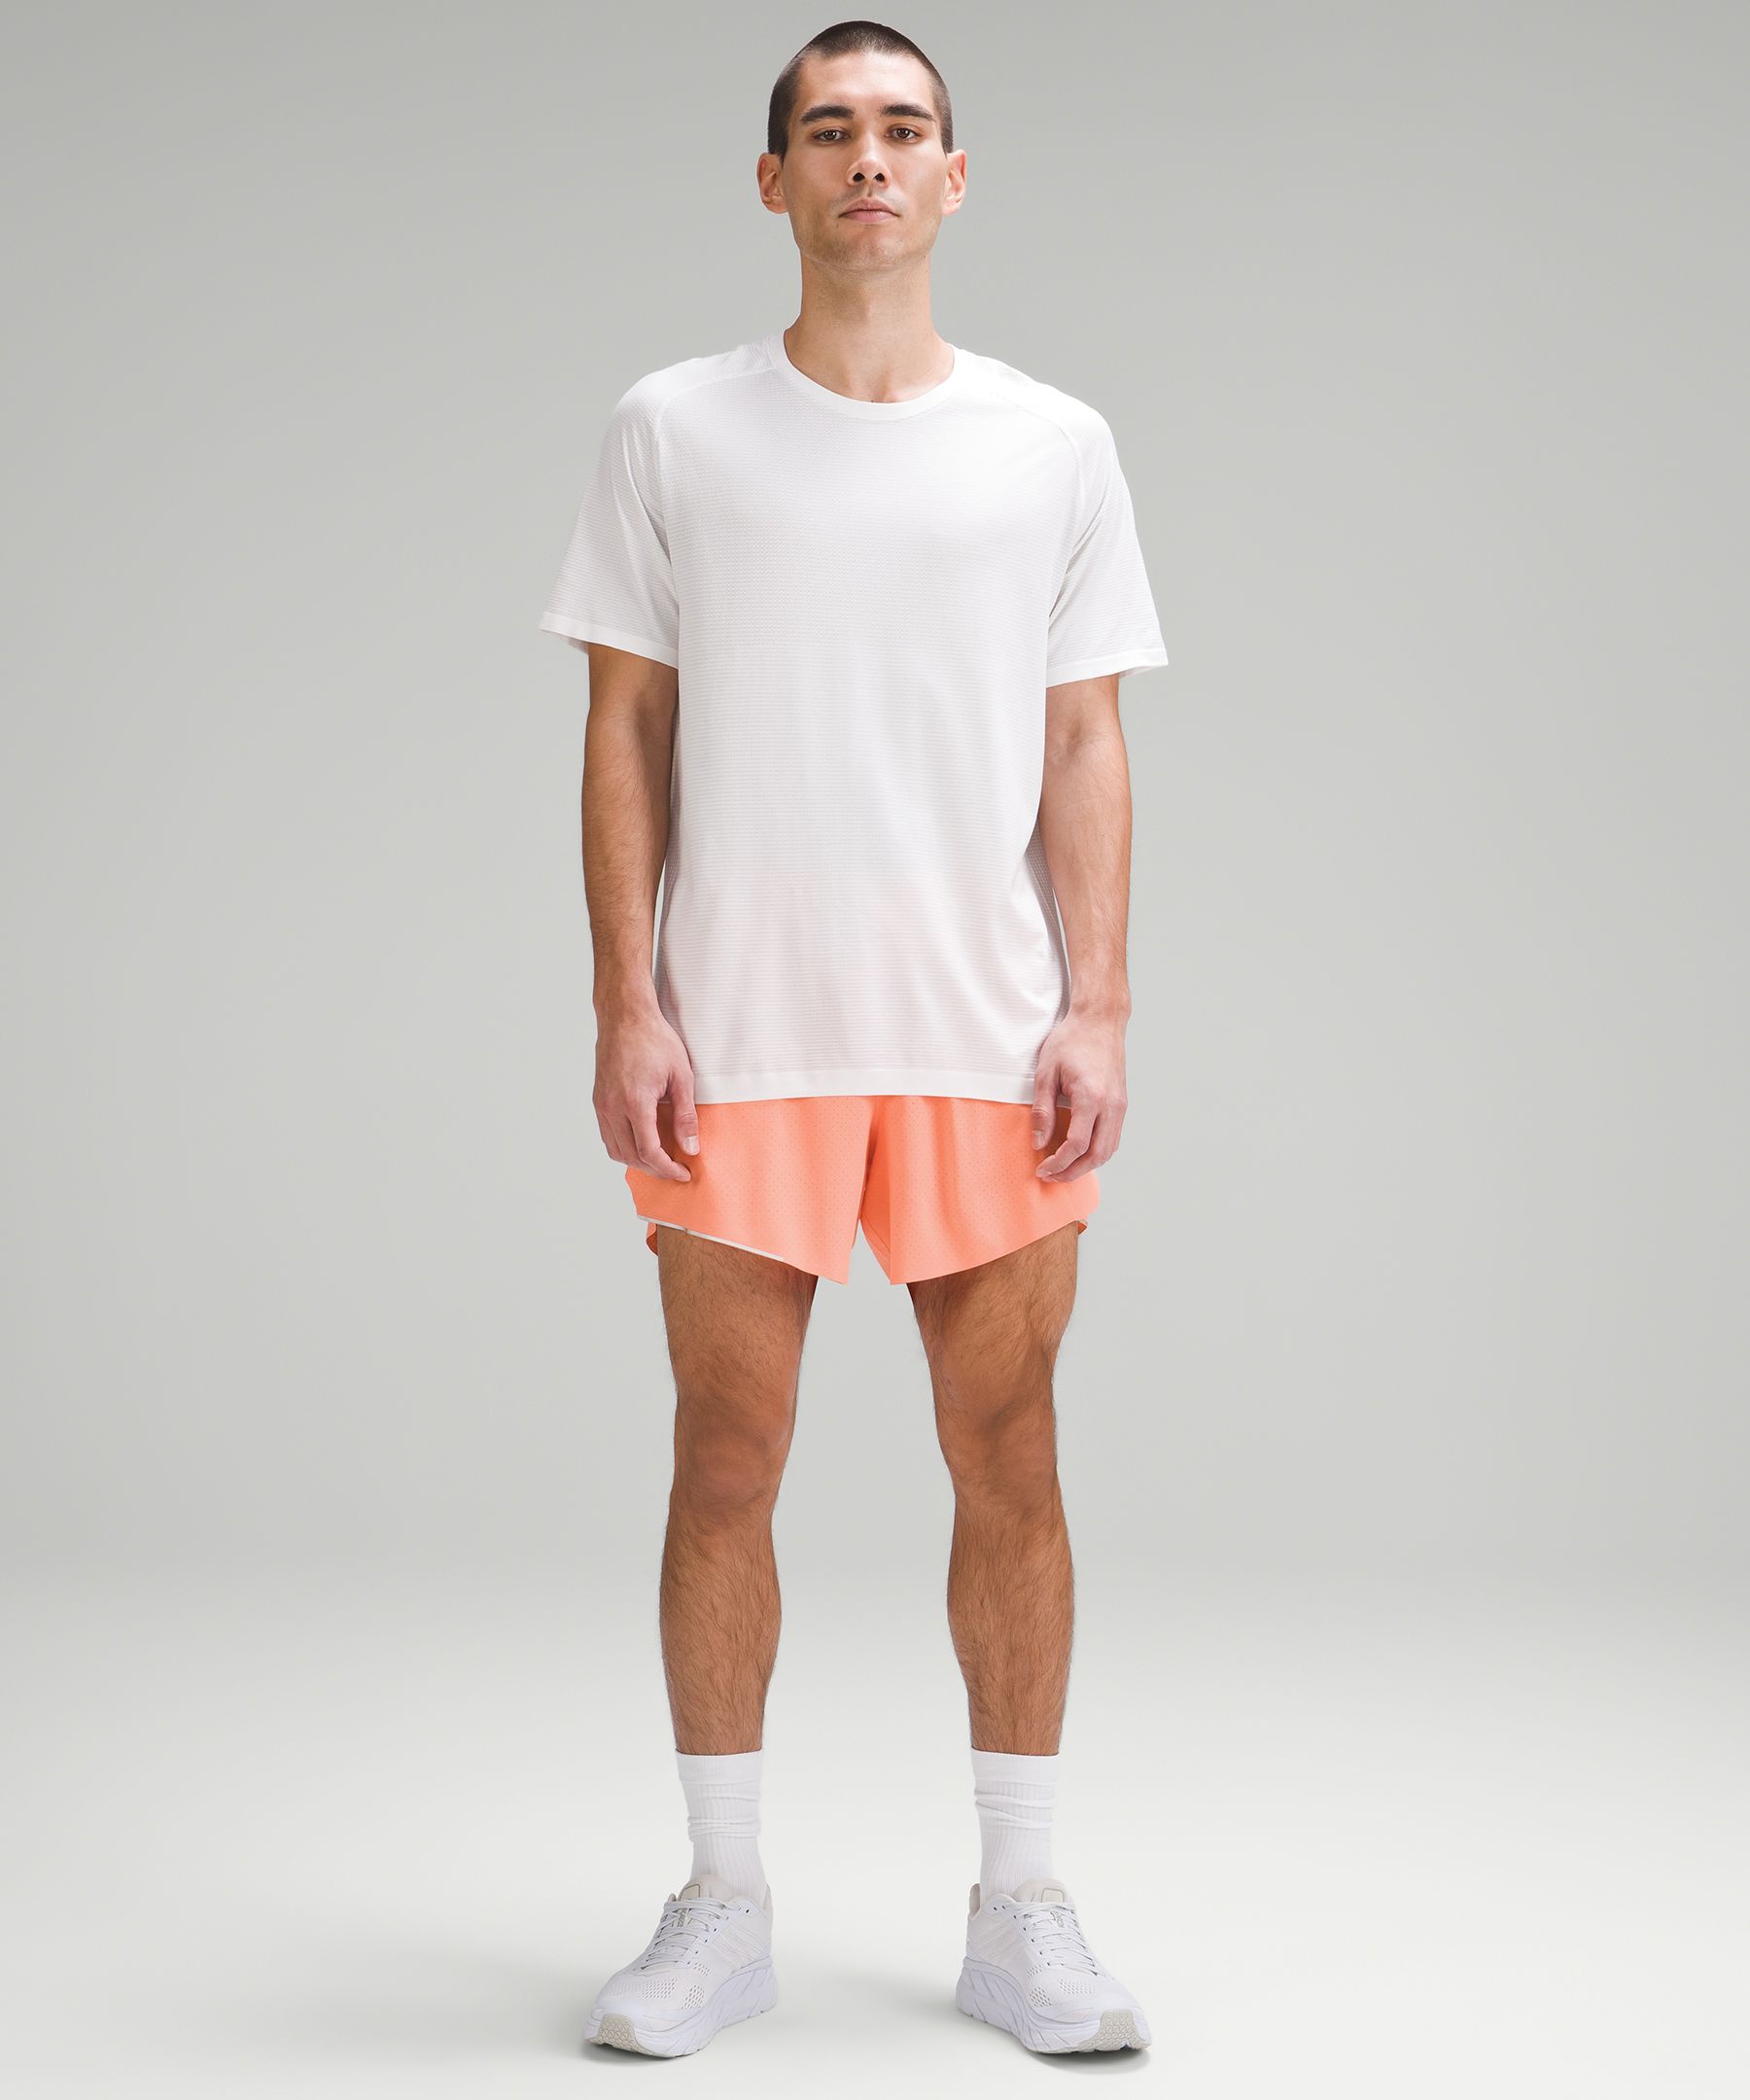 Do White Men's Lululemon Shorts Ever Go on Sale? - Playbite